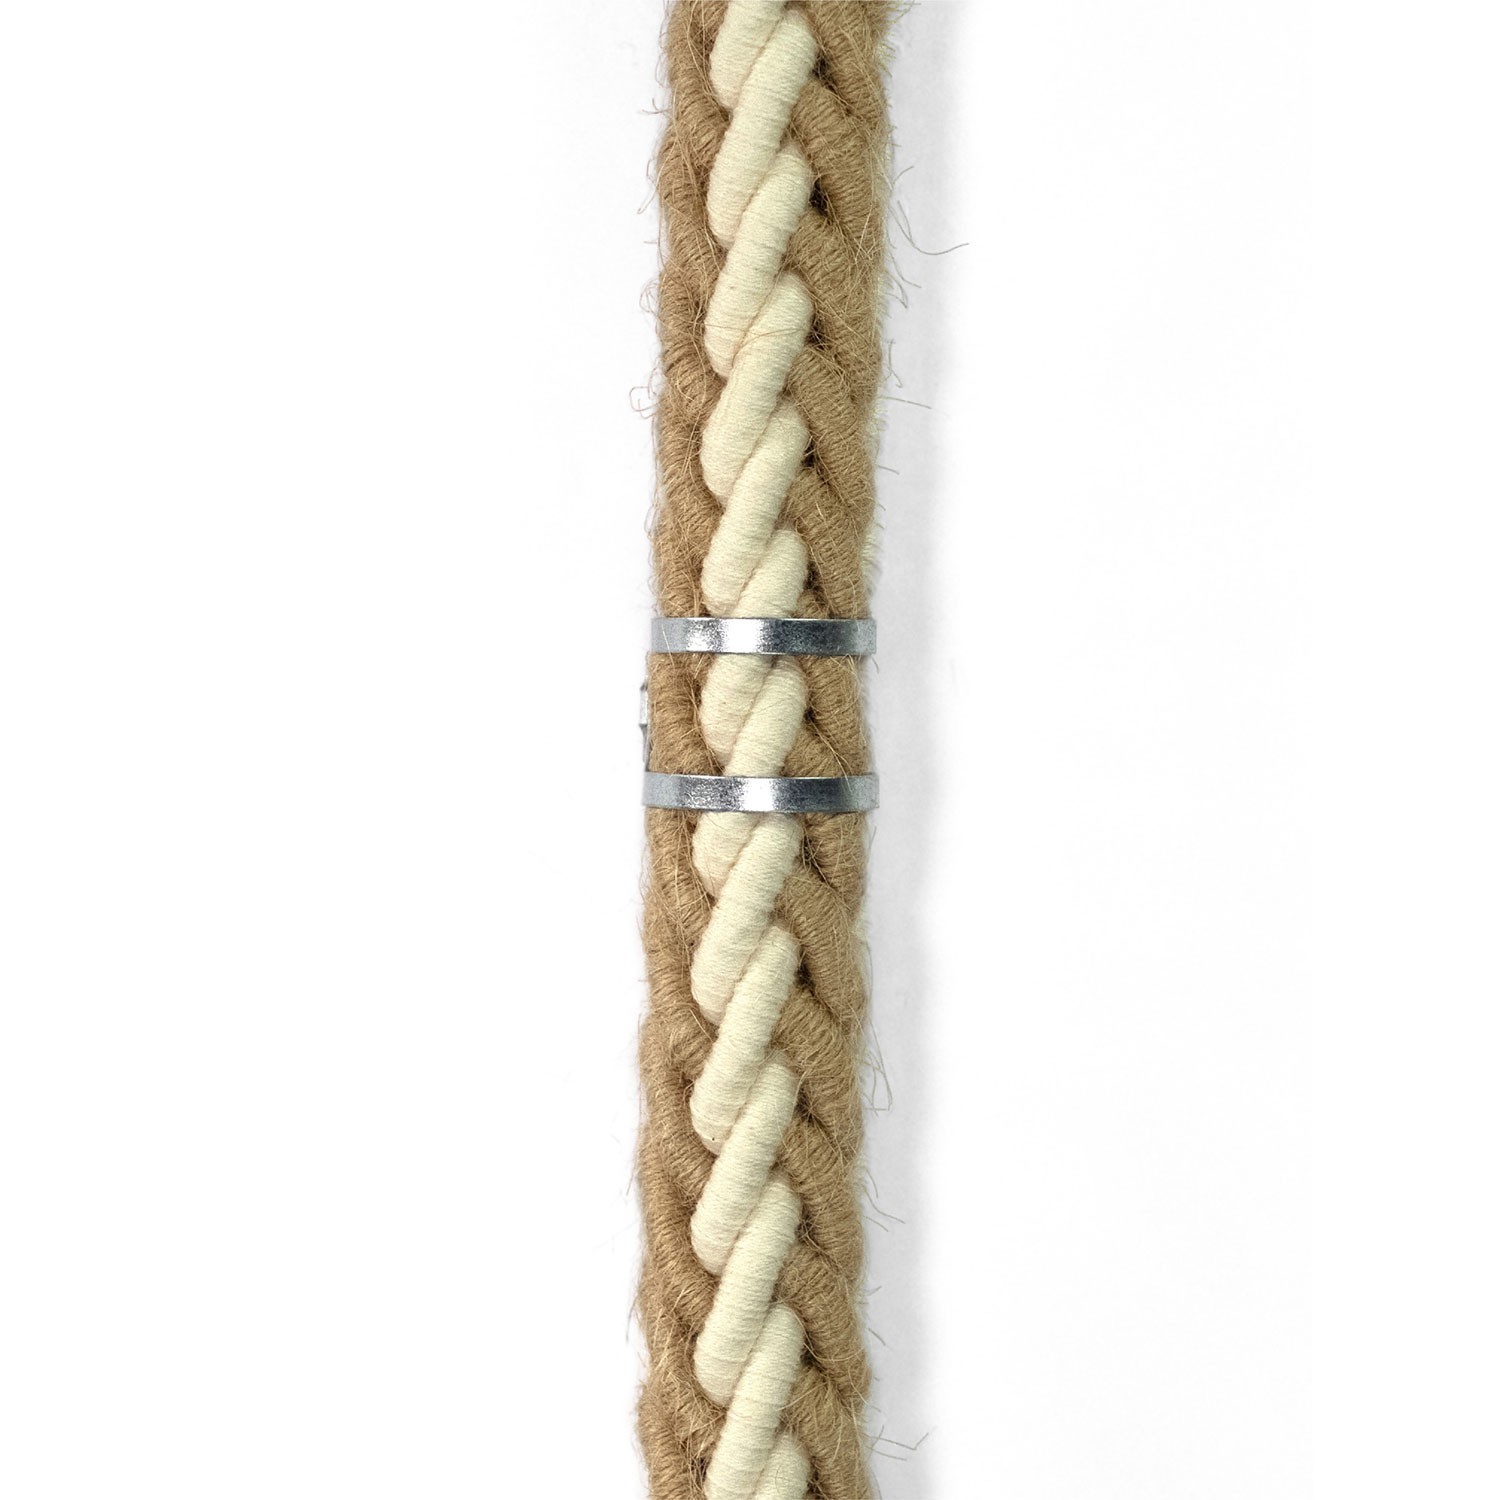 Clip de sujeción de cable metálico para cordón de 24 mm de diámetro